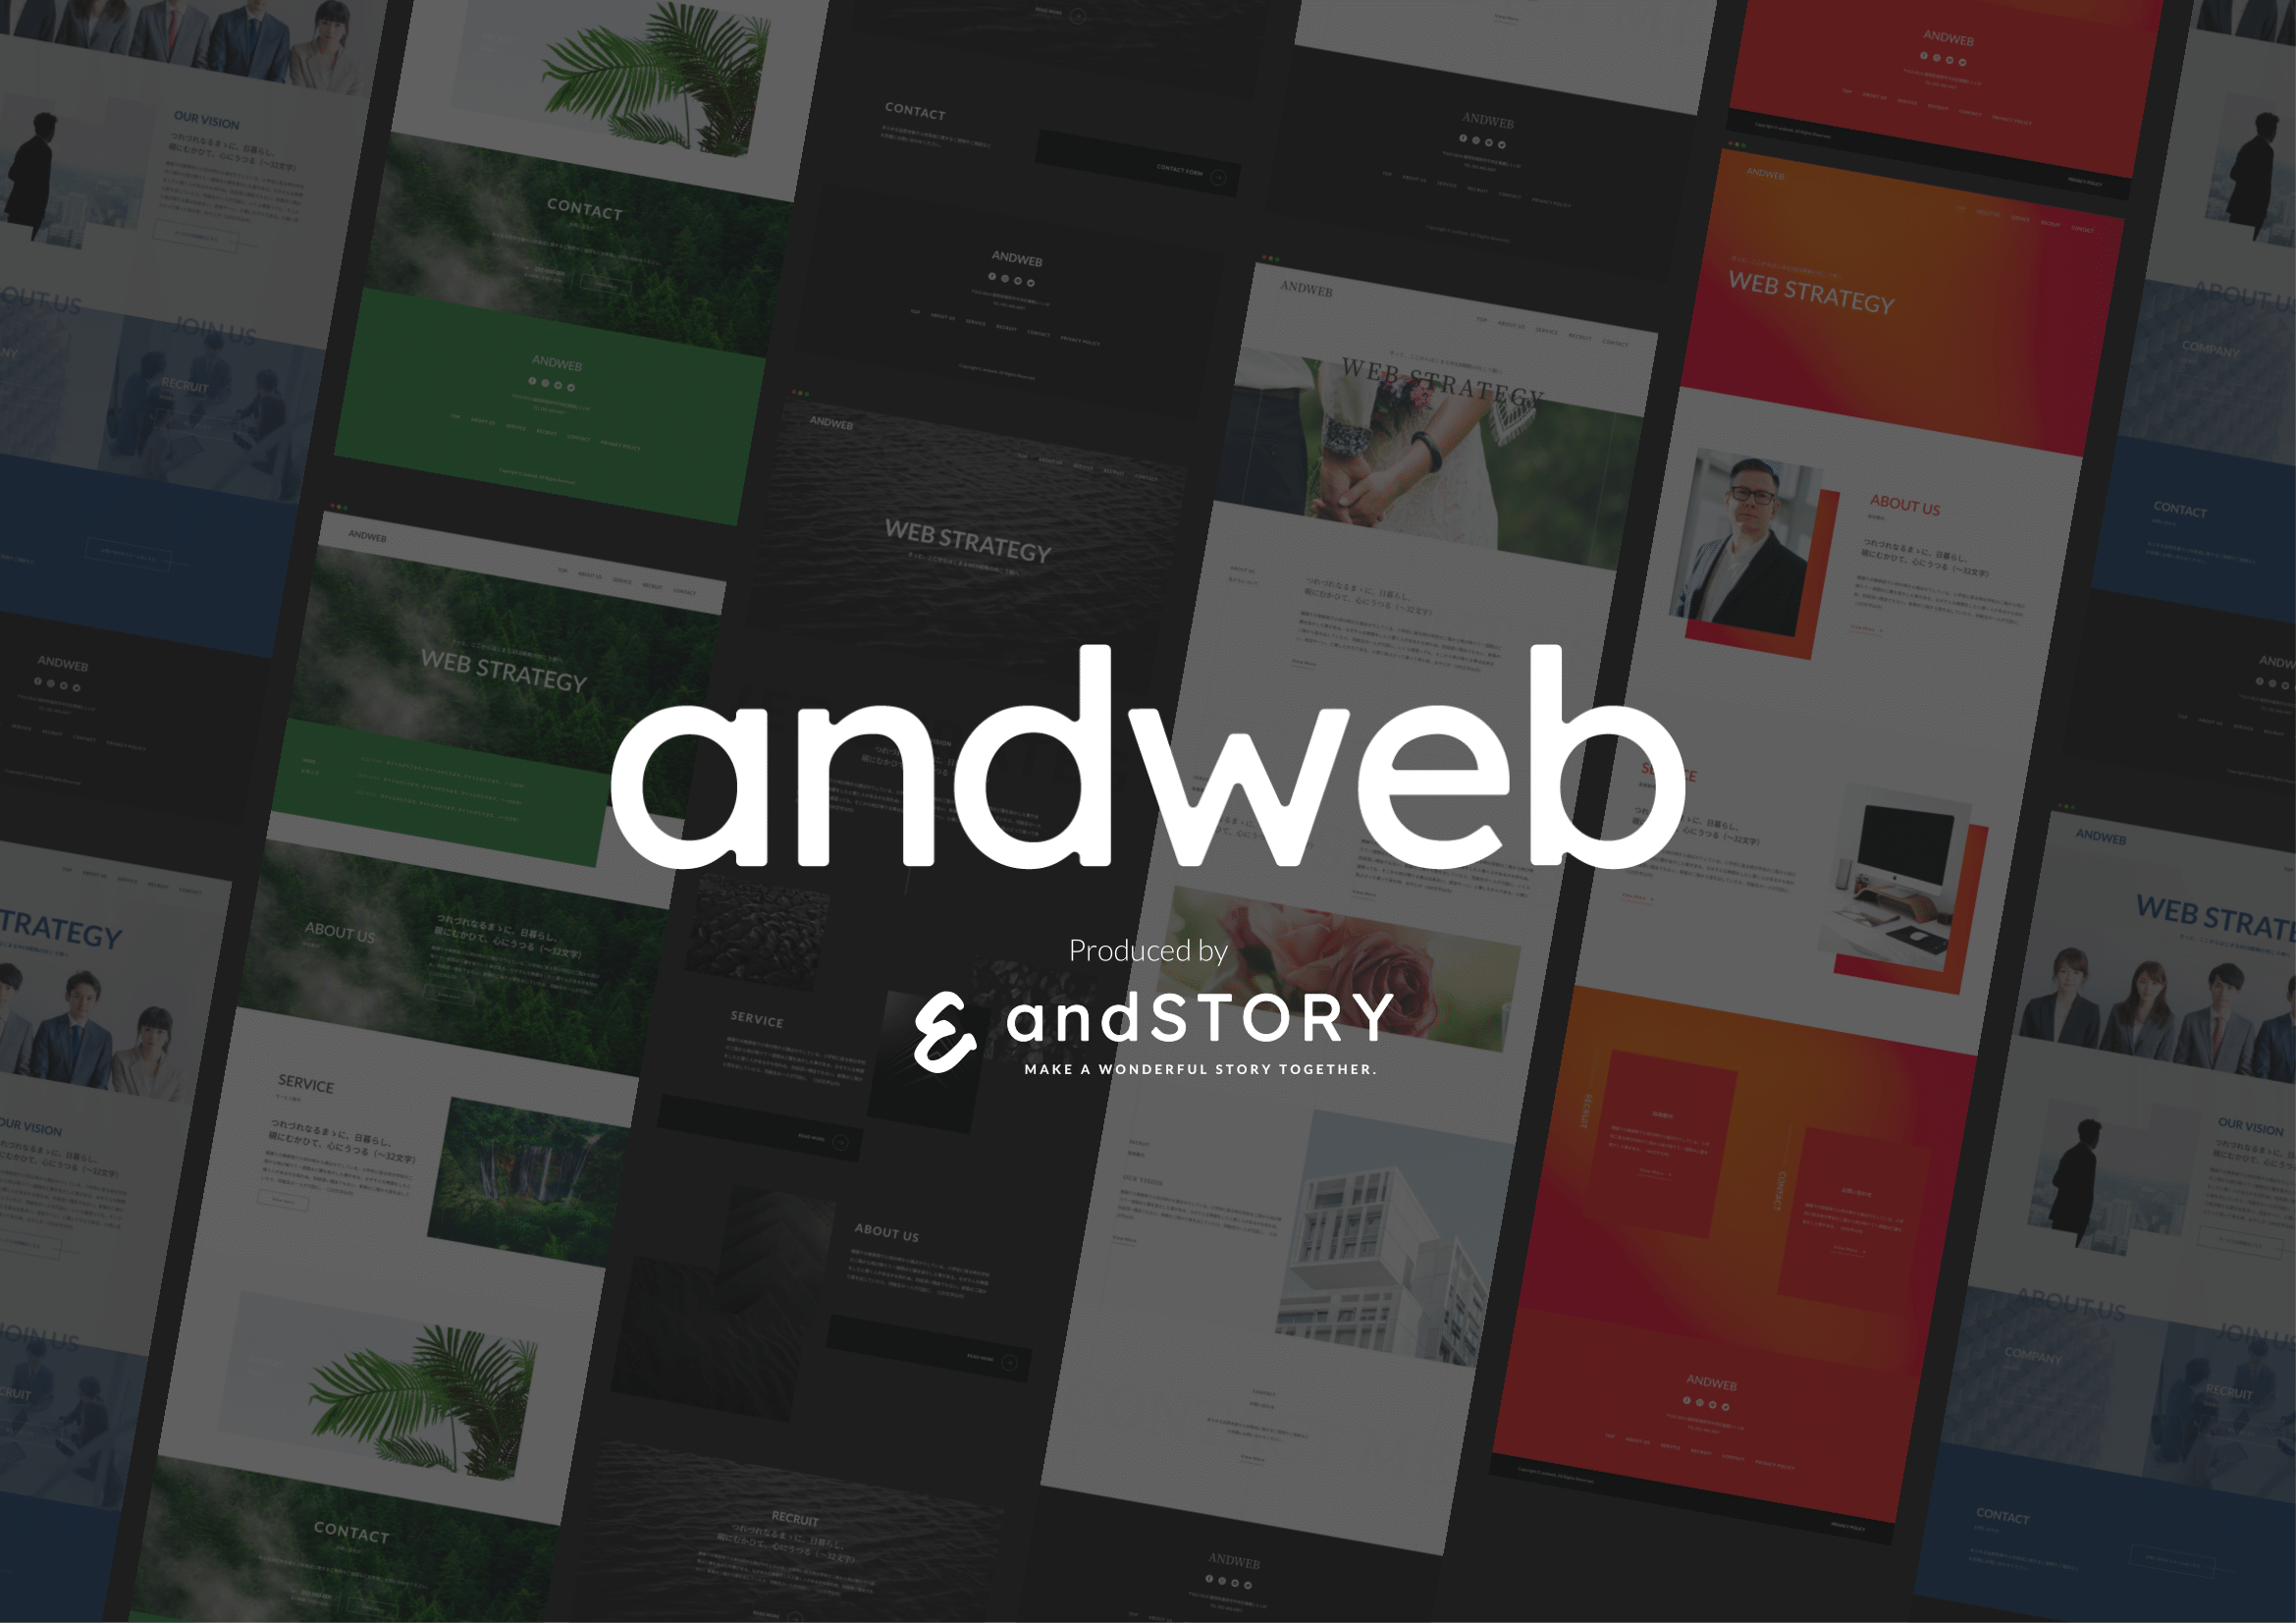 andweb